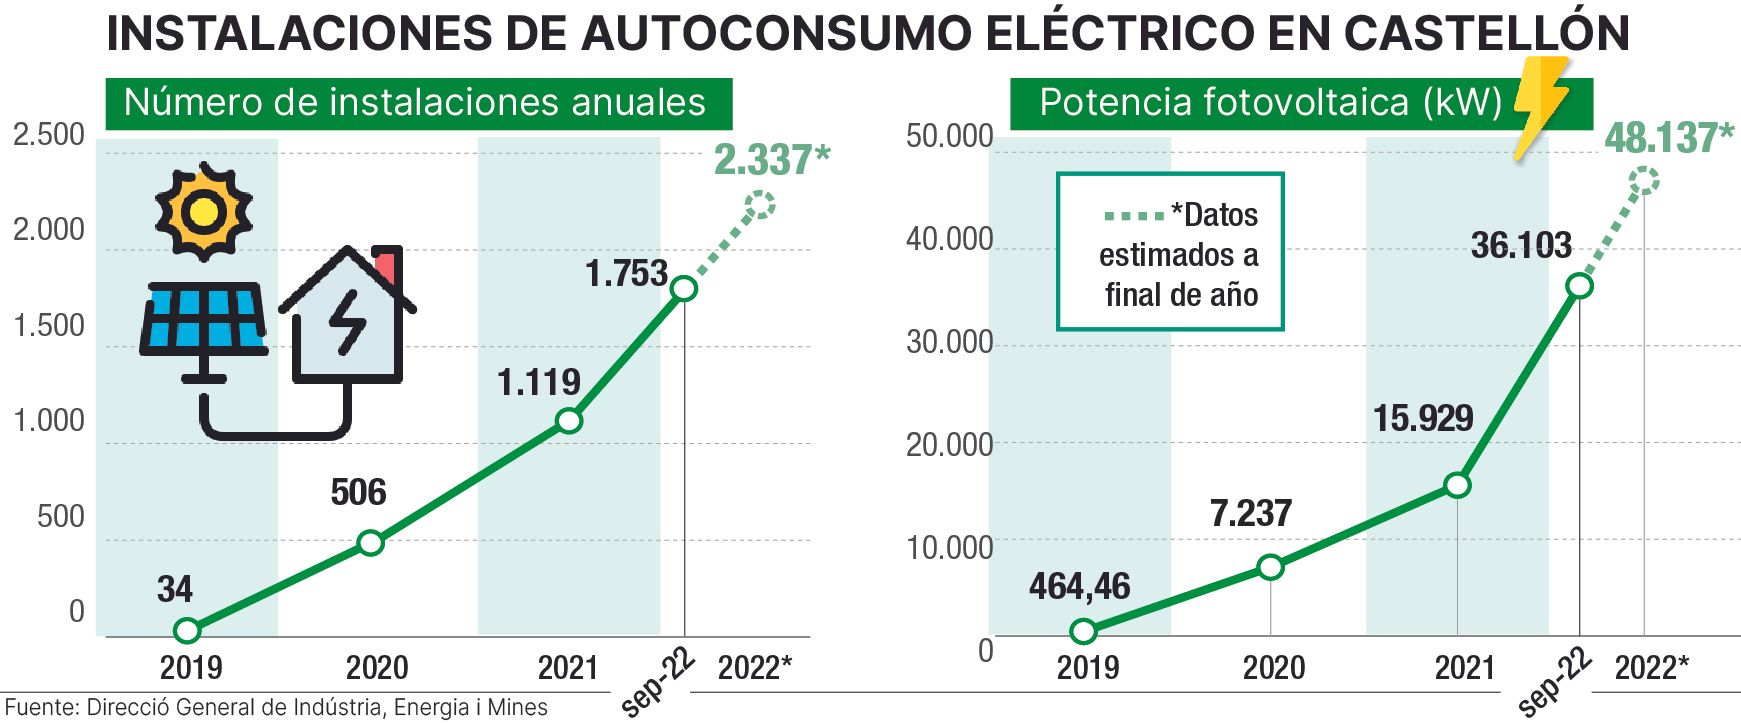 Las cifras del autoconsumo eléctrico en Castellón.